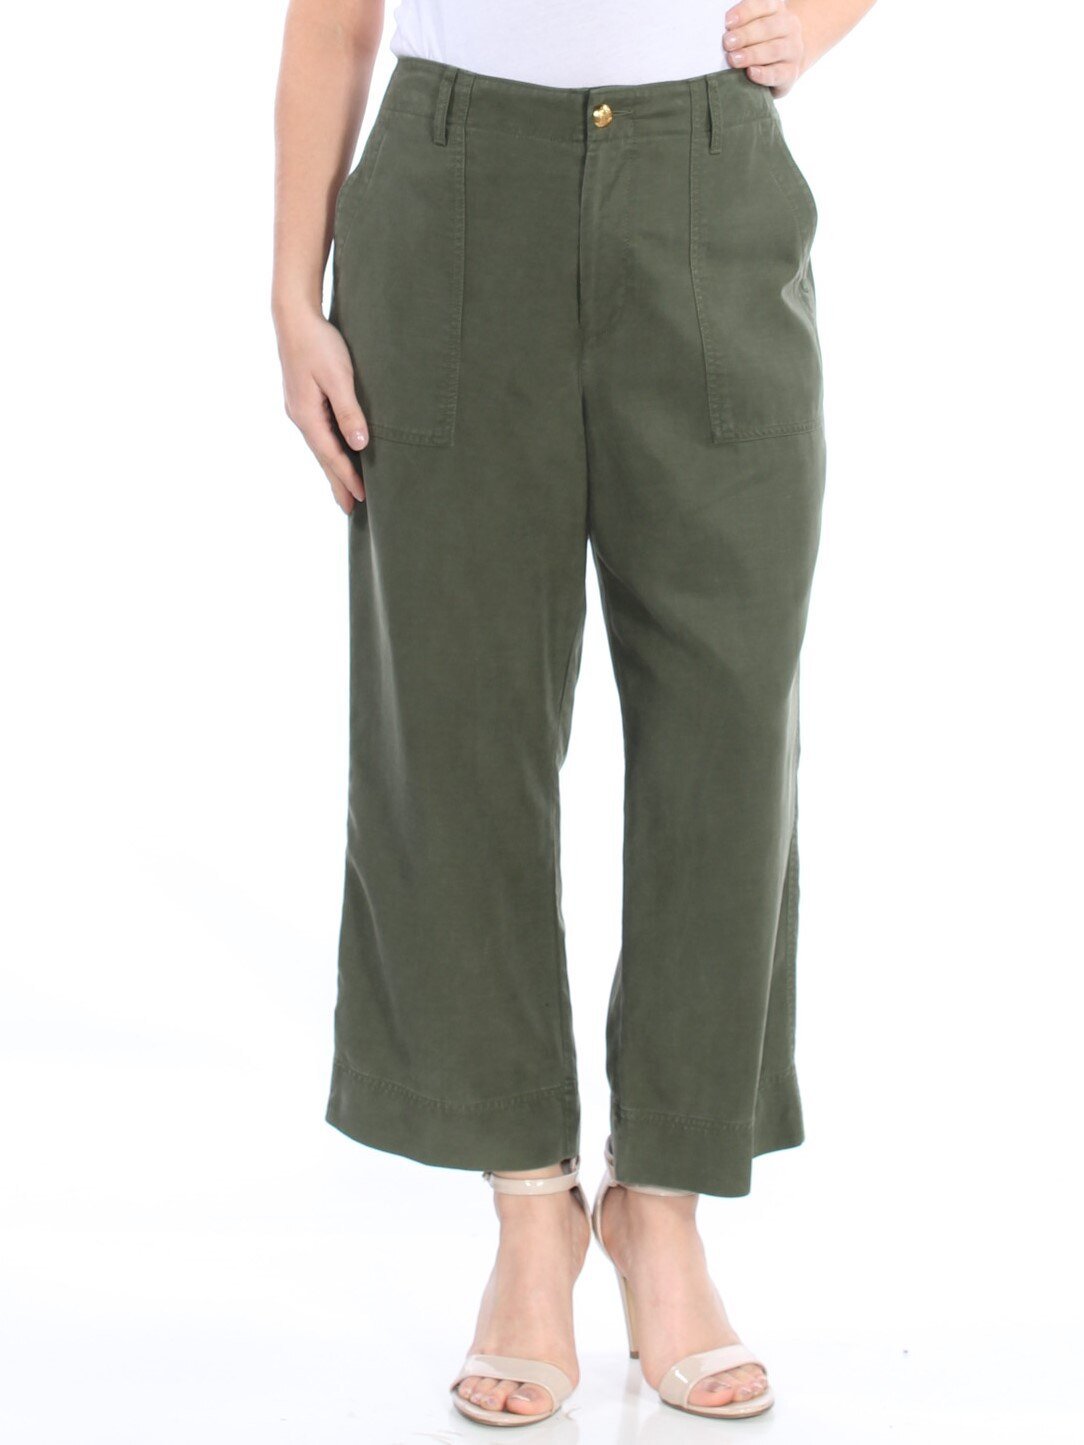 RALPH LAUREN Women's Green Pants